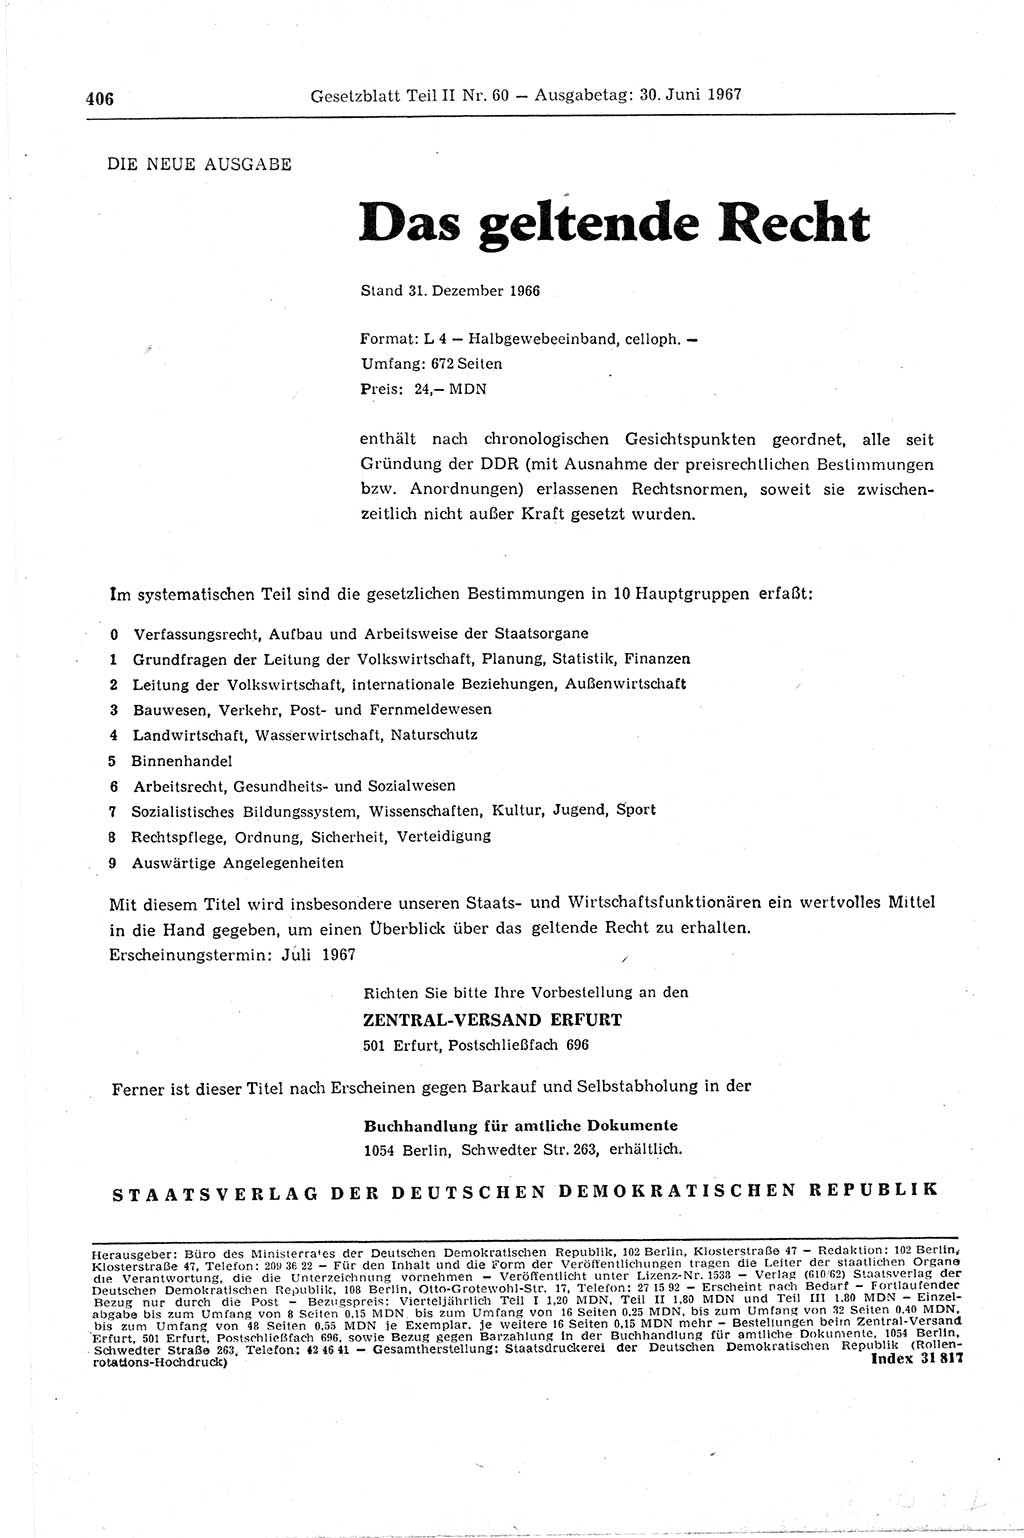 Gesetzblatt (GBl.) der Deutschen Demokratischen Republik (DDR) Teil ⅠⅠ 1967, Seite 406 (GBl. DDR ⅠⅠ 1967, S. 406)